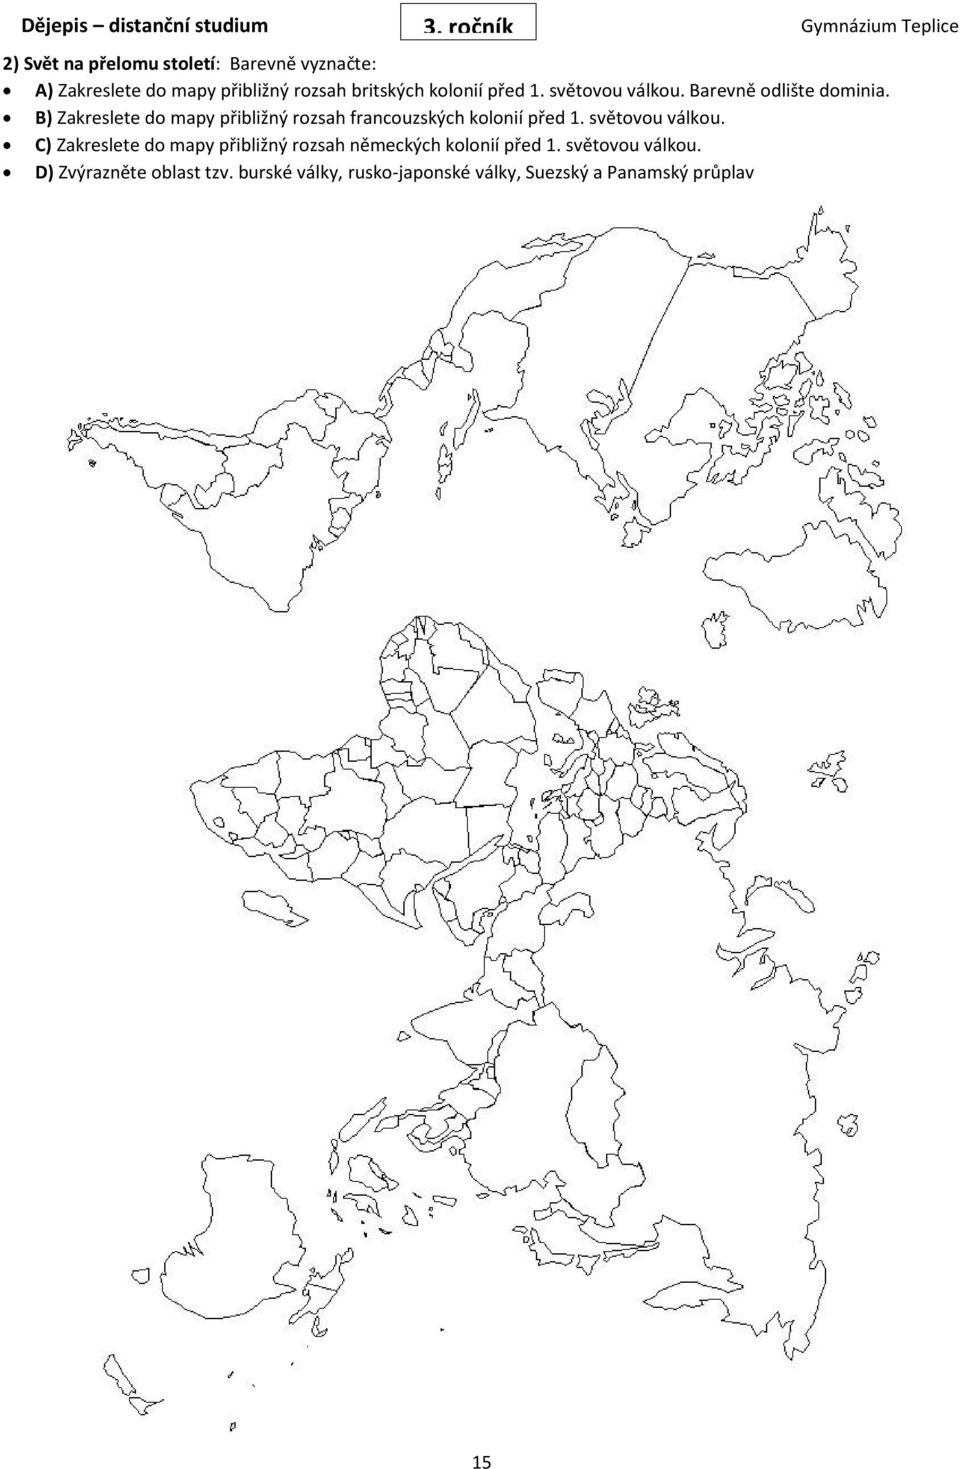 B) Zakreslete do mapy přibližný rozsah francouzských kolonií před 1. světovou válkou.